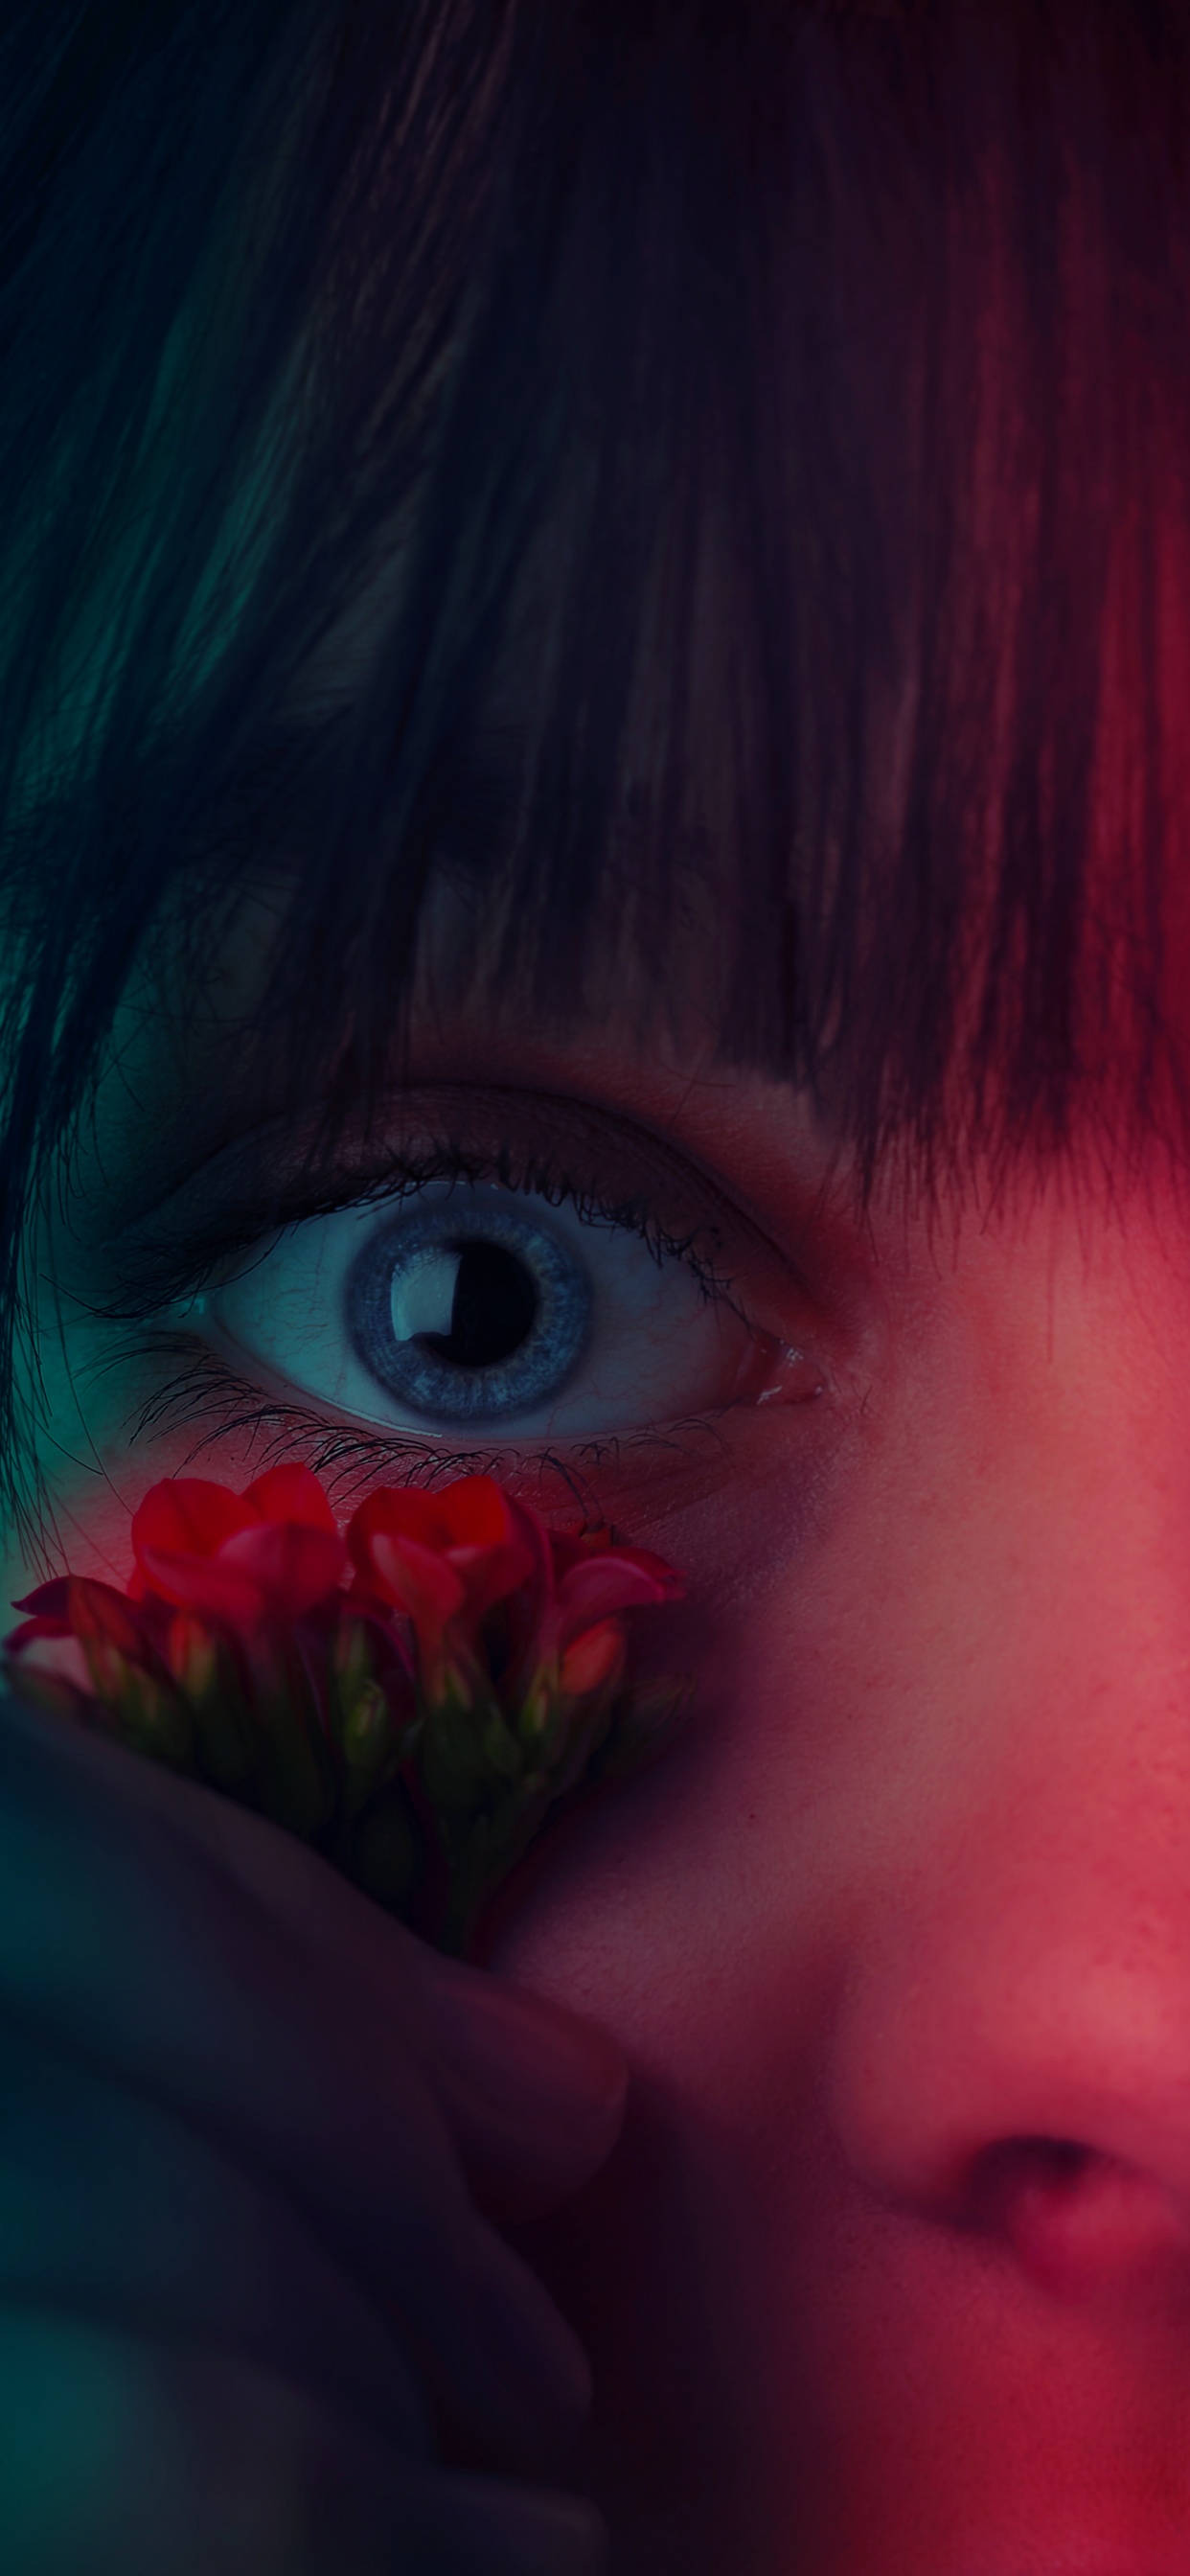 Mädchen Mit Roter Blume im Gesicht. Wallpaper in 1242x2688 Resolution